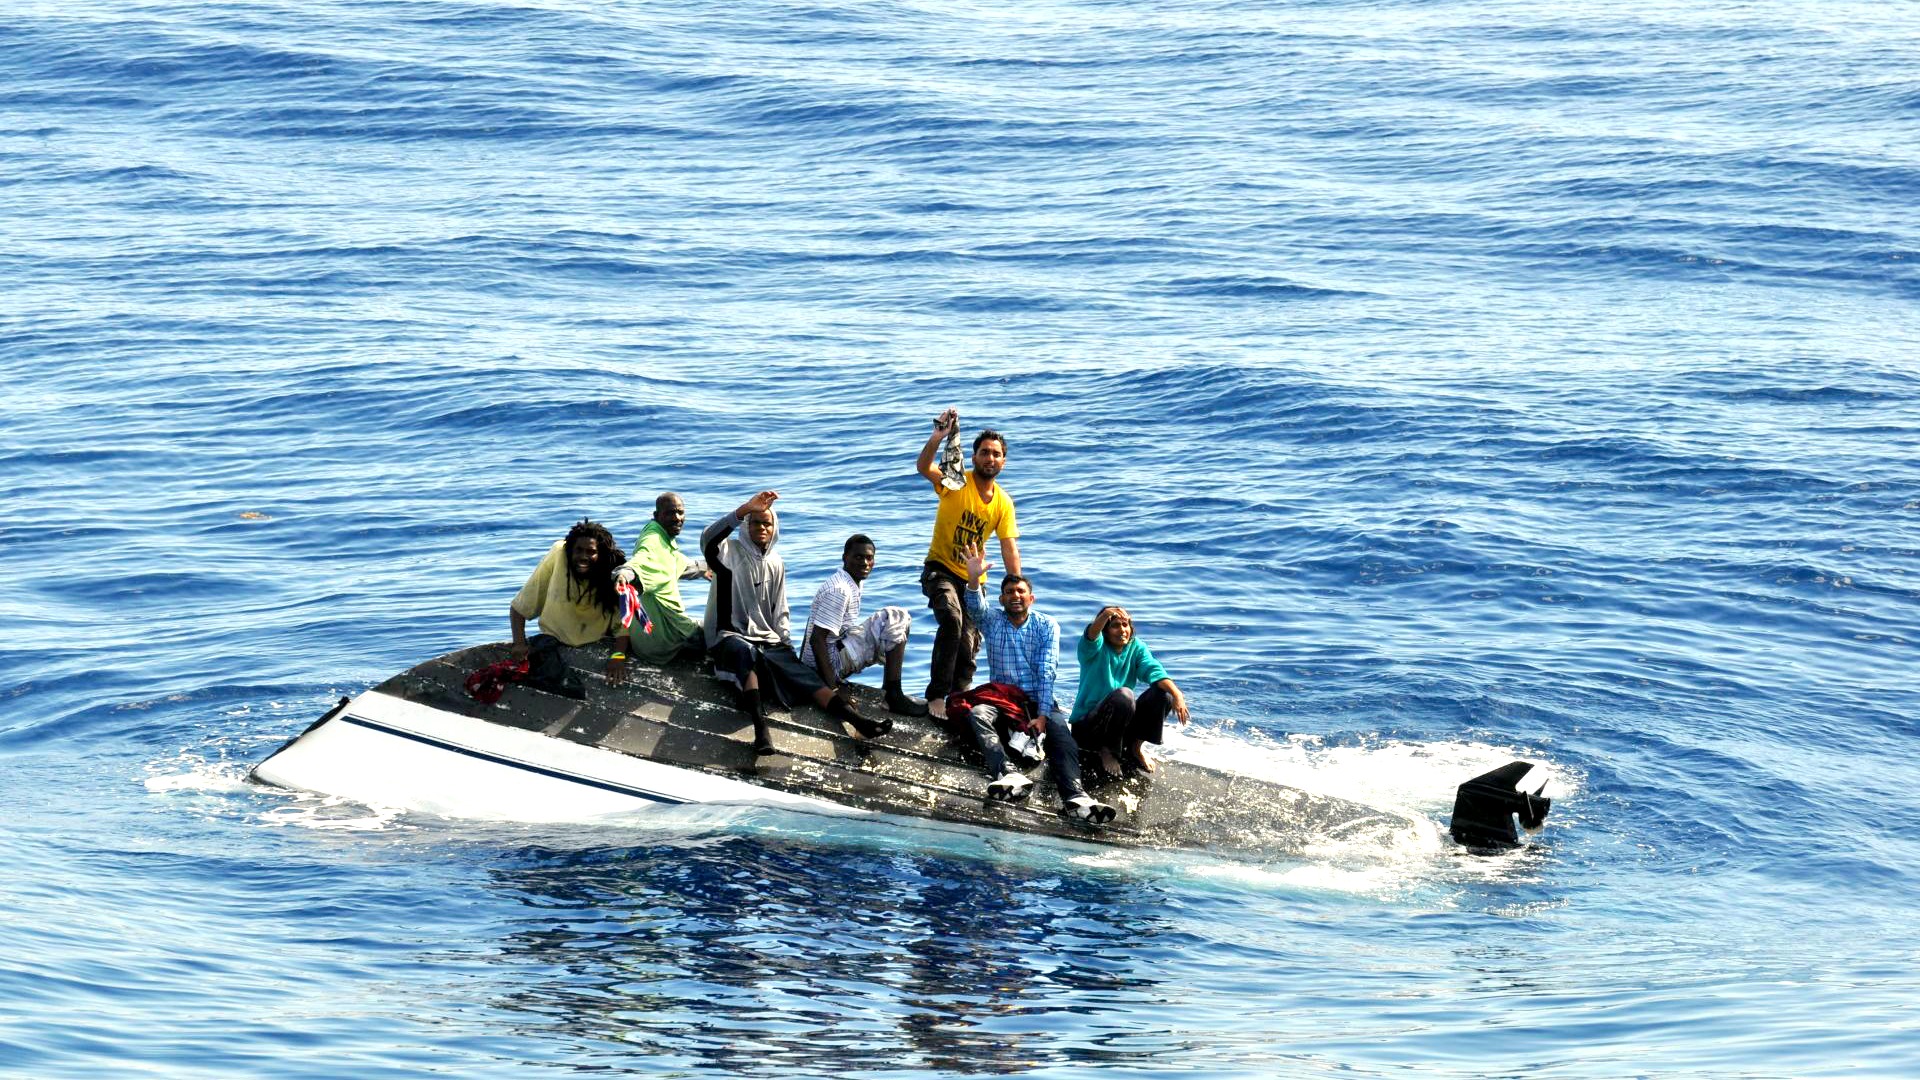 Les migrants traversent souvent la mer au péril de leur vie. | © Coast Guard News/Flickr/CC BY-NC-ND 2.0